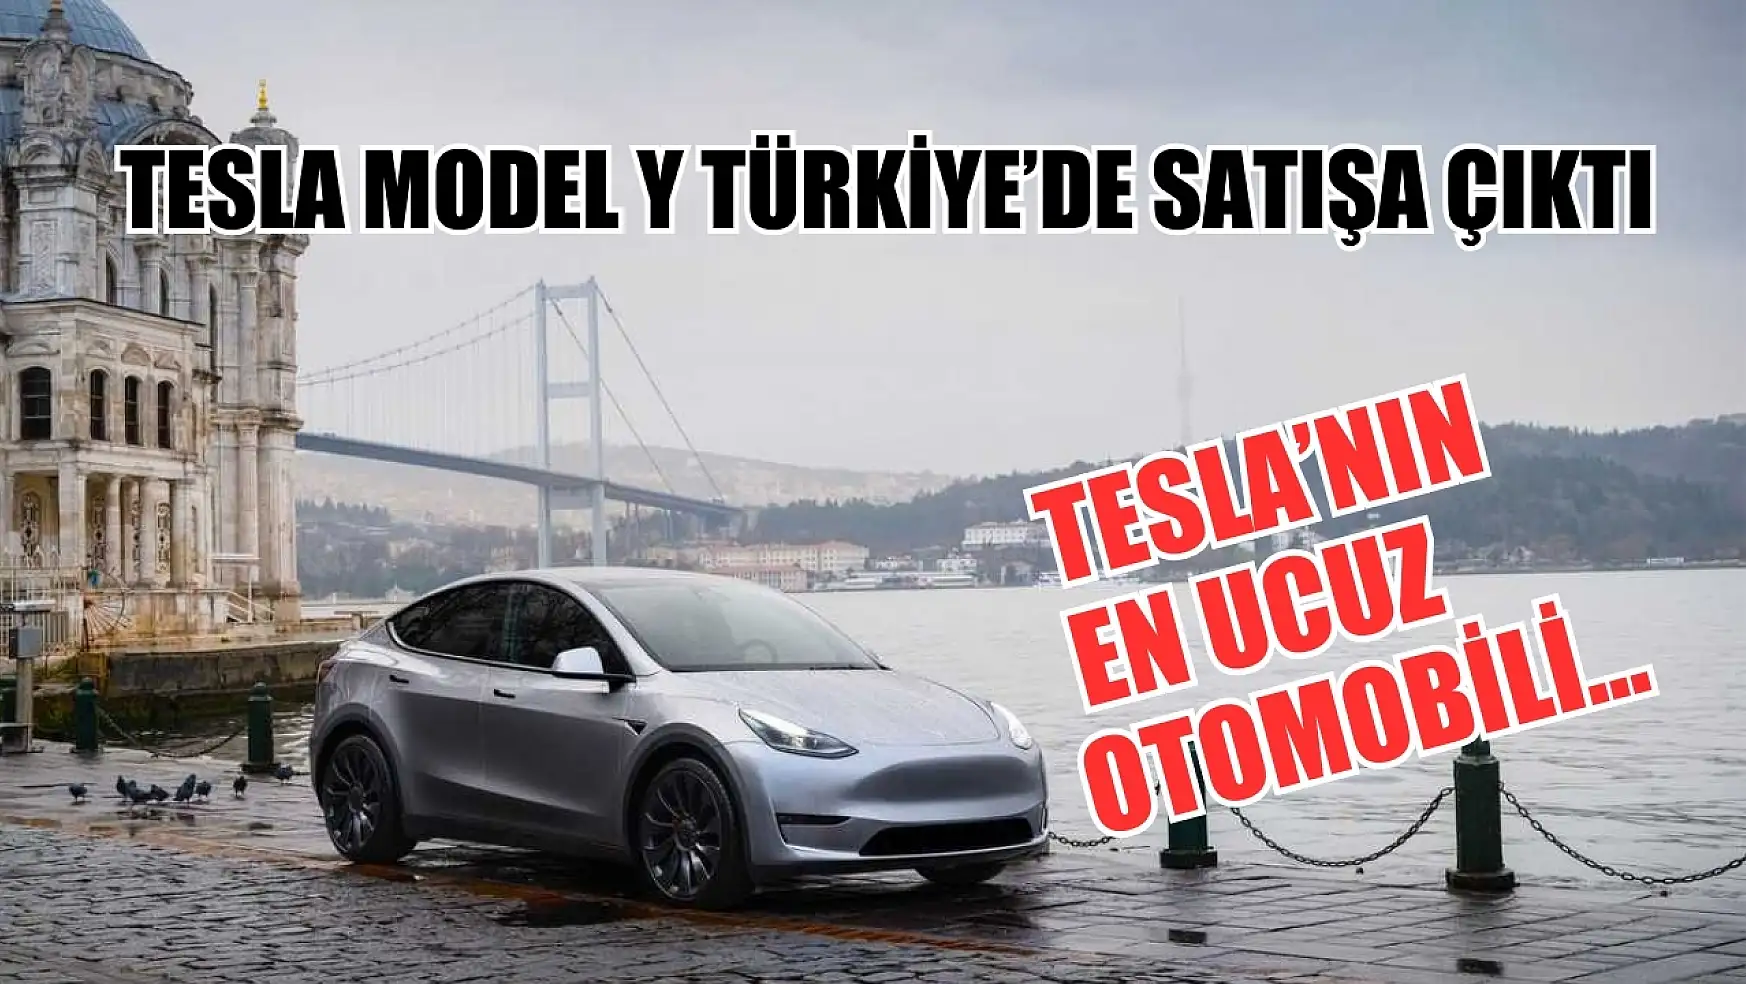 Tesla Model Y Türkiye'de satışa çıktı Tesla'nın en ucuz otomobili…